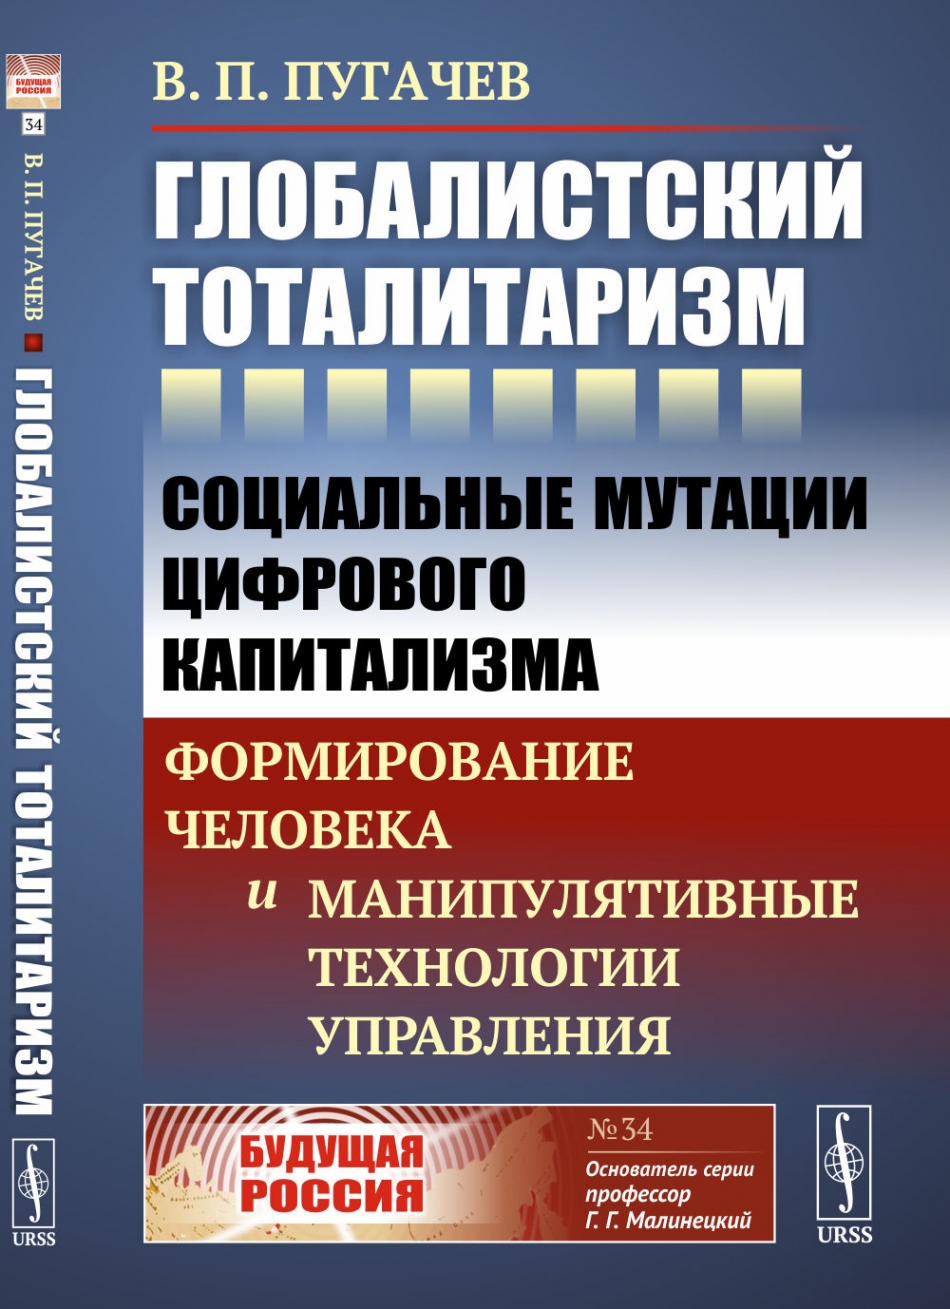 Пугачев В.П. Глобалистский тоталитаризм 